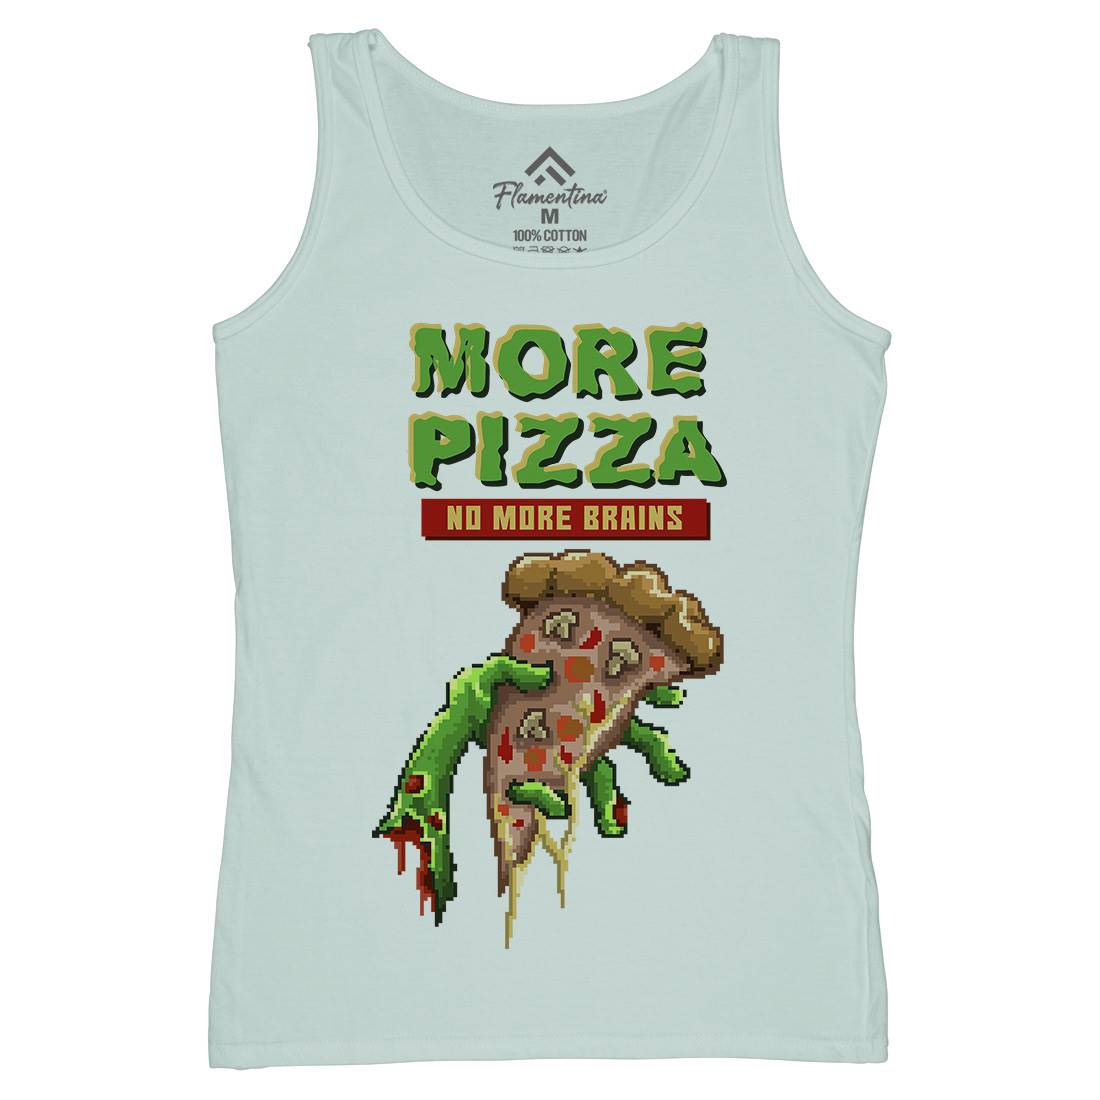 Zombie Pizza Womens Organic Tank Top Vest Food B982